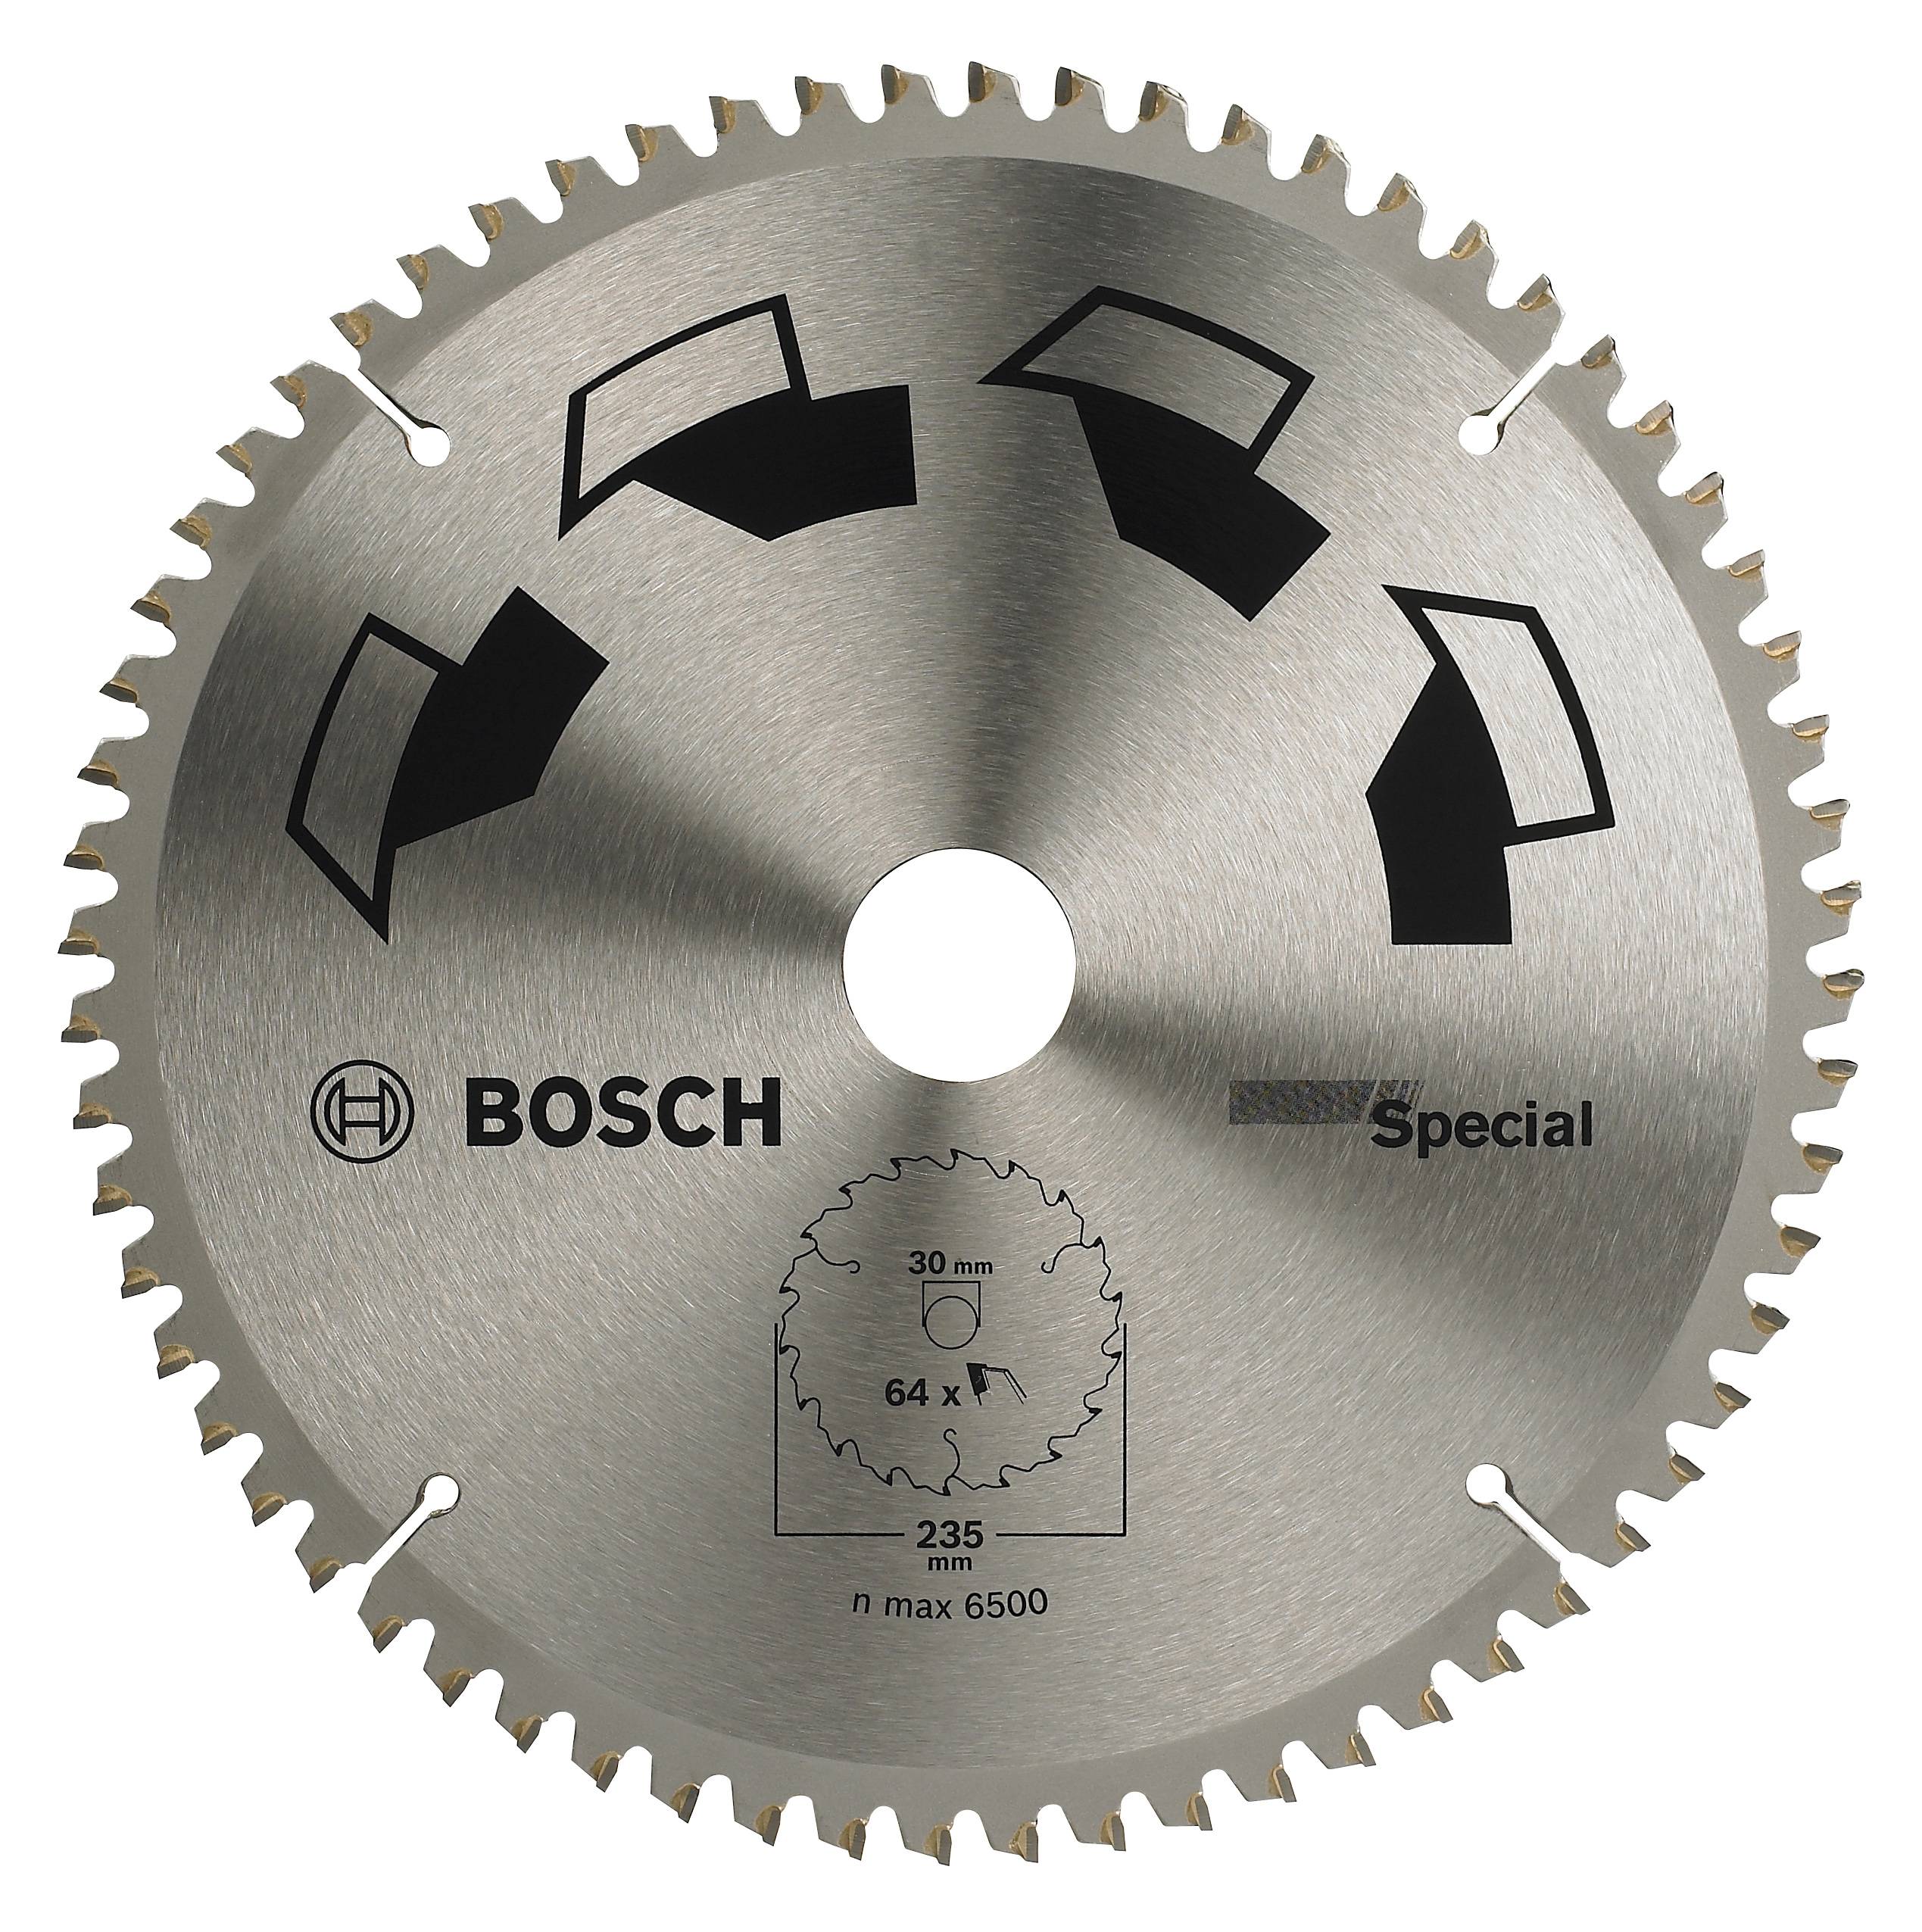 Gehoorzaam Miniatuur metgezel Bosch Accessories Special 2609256895 Hardmetaal-cirkelzaagblad 235 x 30 mm  Aantal tanden: 64 1 stuk(s) | Conrad.nl